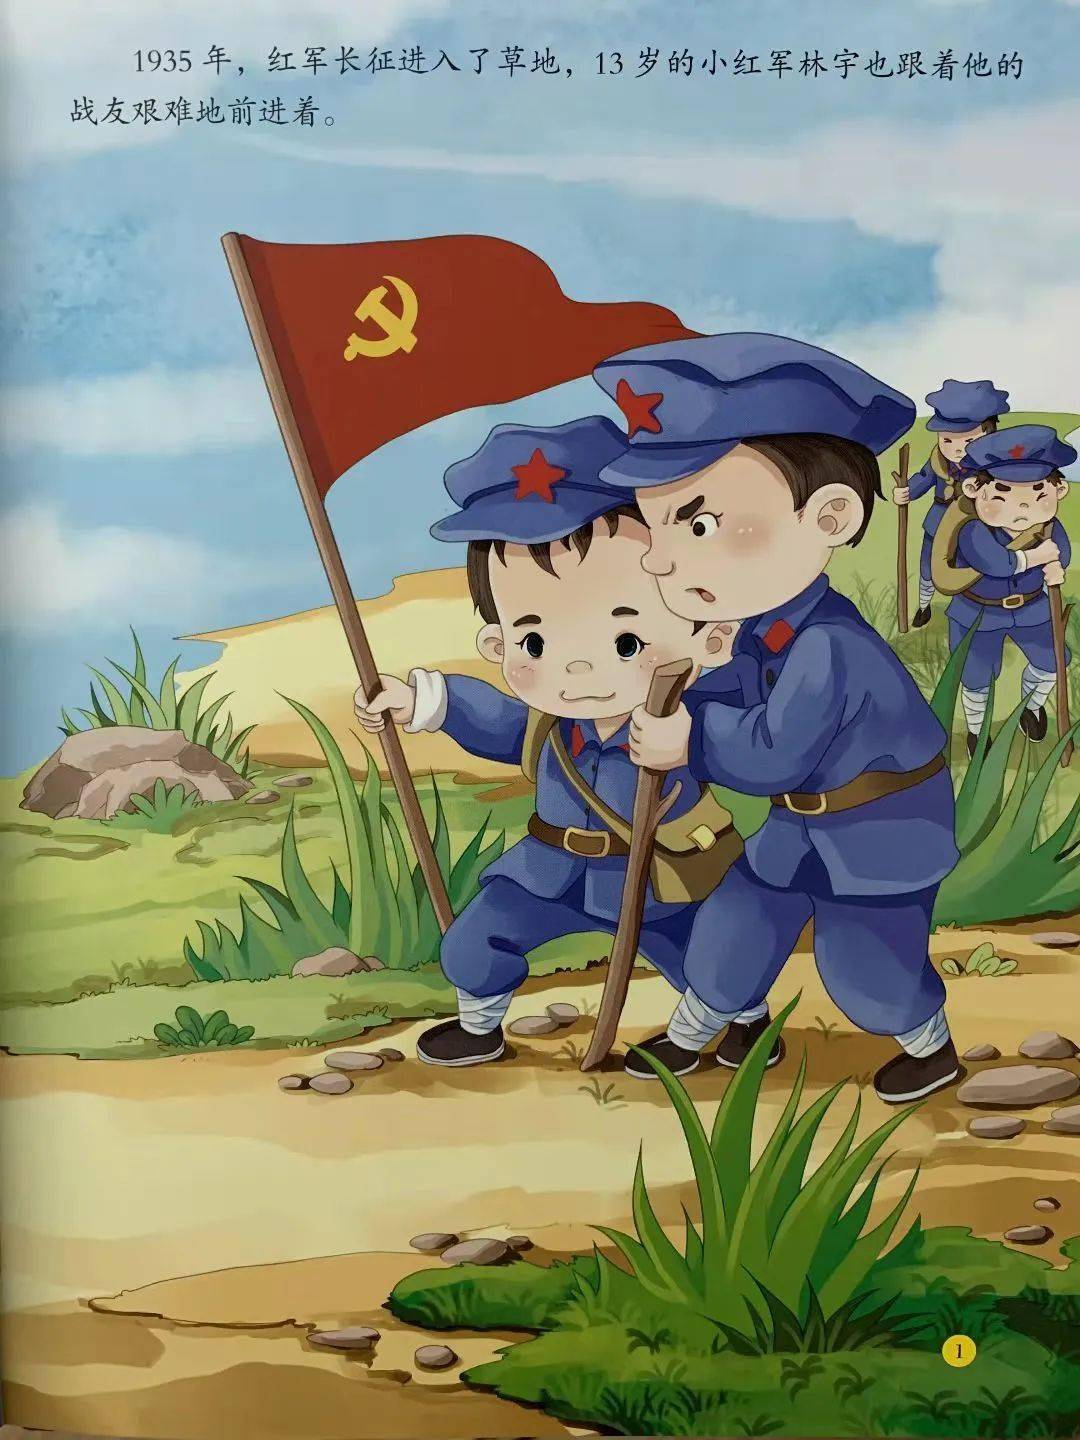 1935年,红军长征进入了草地,13岁的小红军林宇也跟着他的战友艰难地